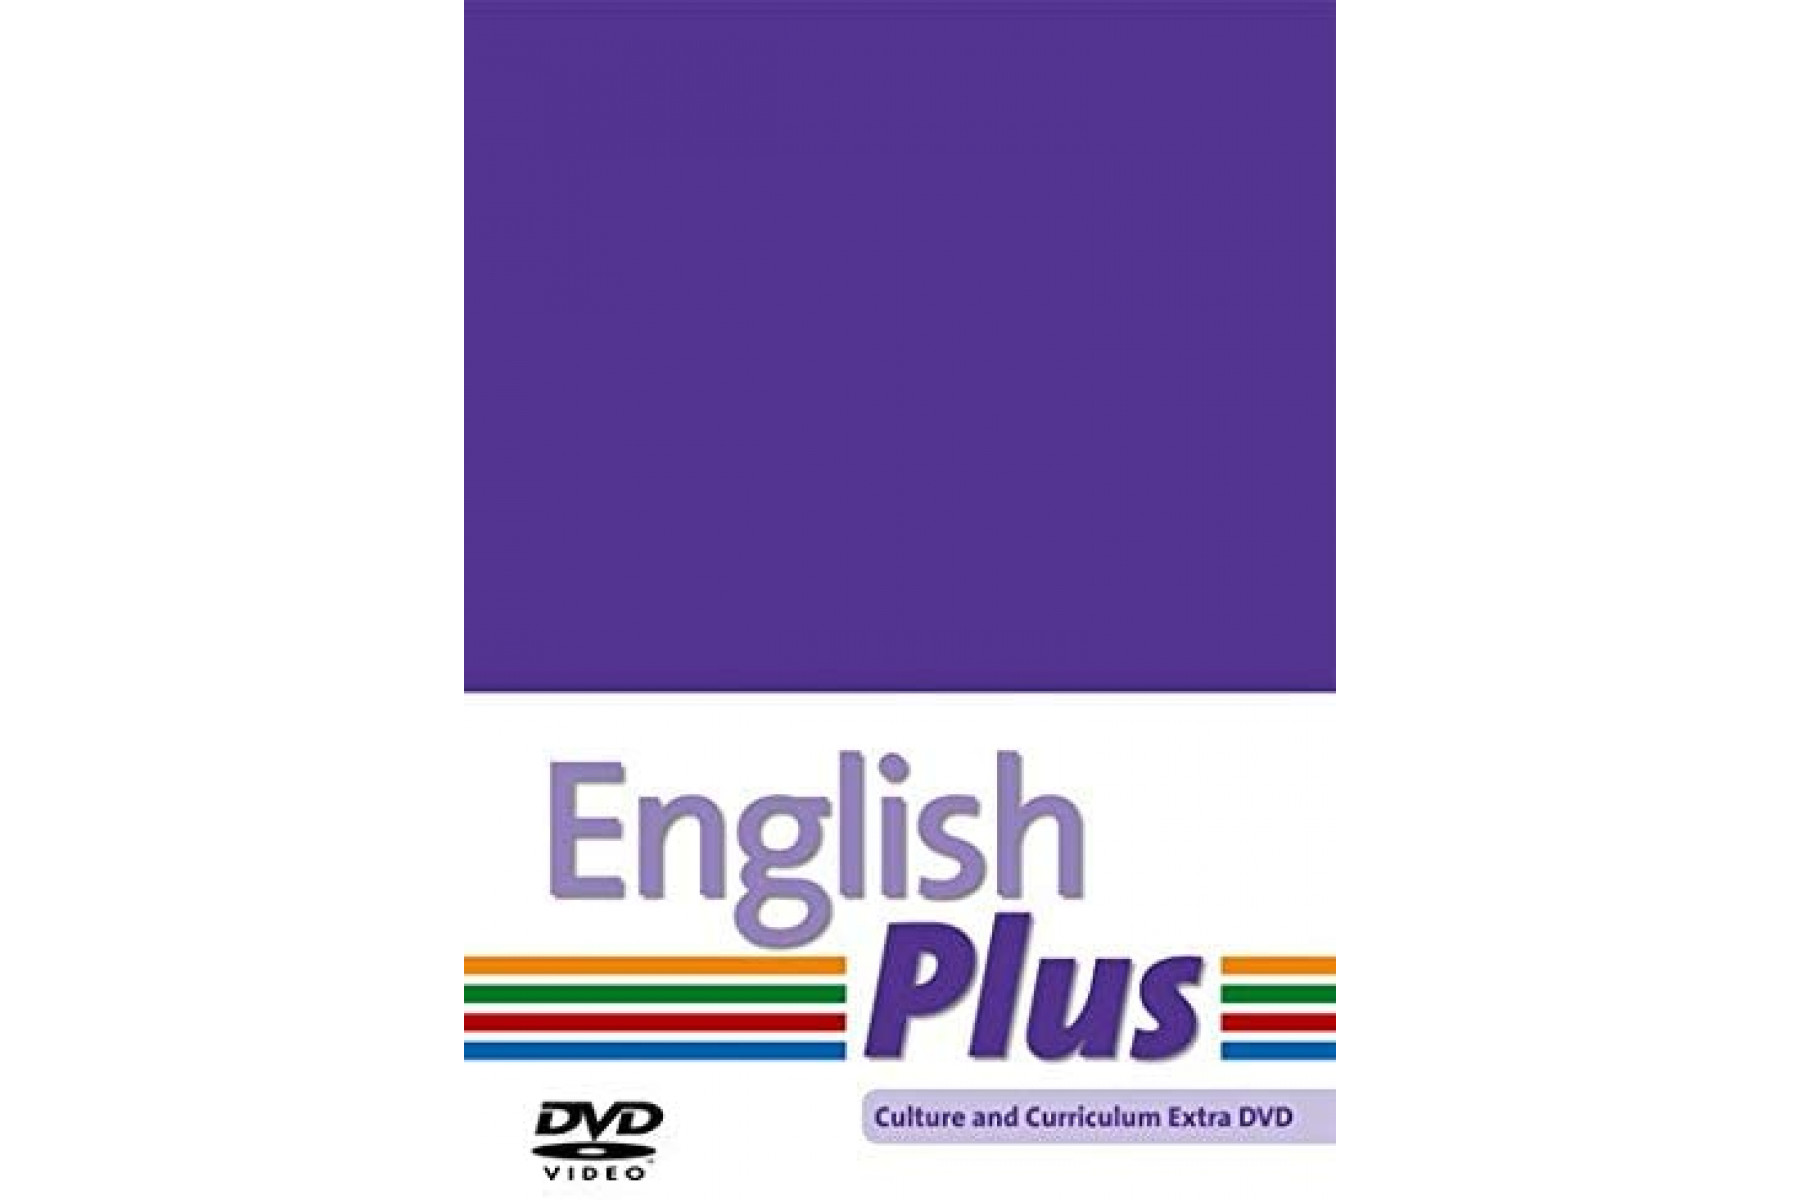 English Plus: DVD